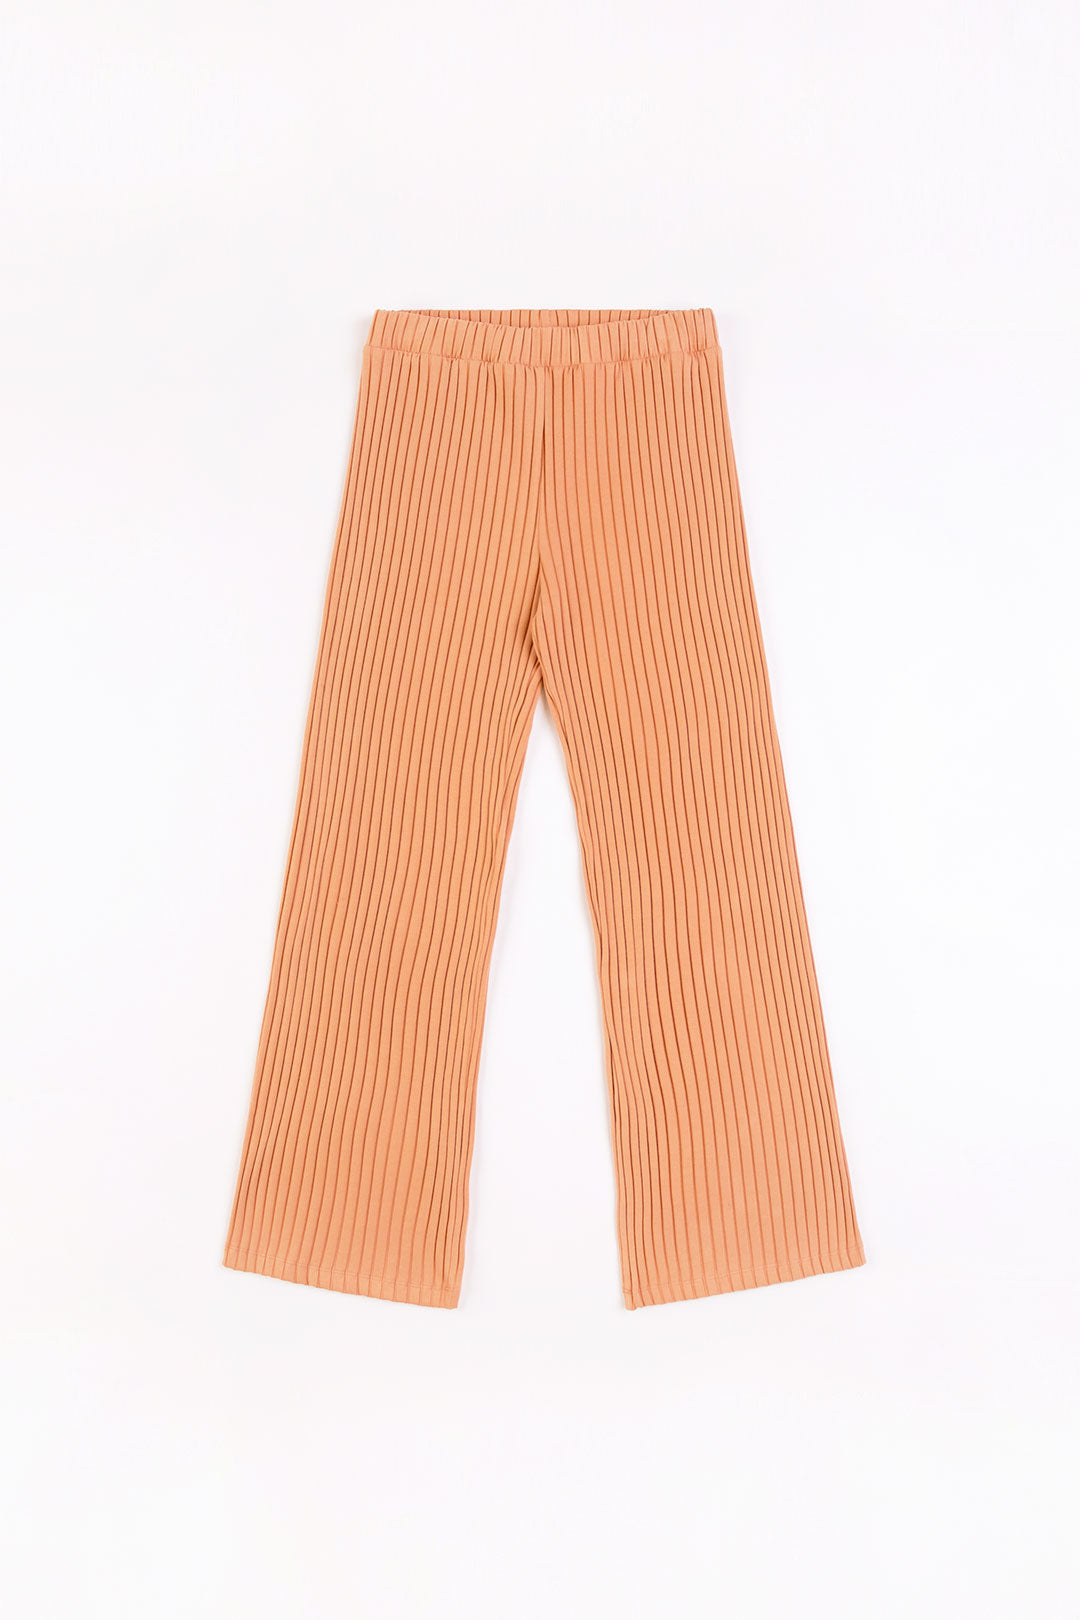 Pantalon Lounge côtelé orange en coton biologique de Rotholz